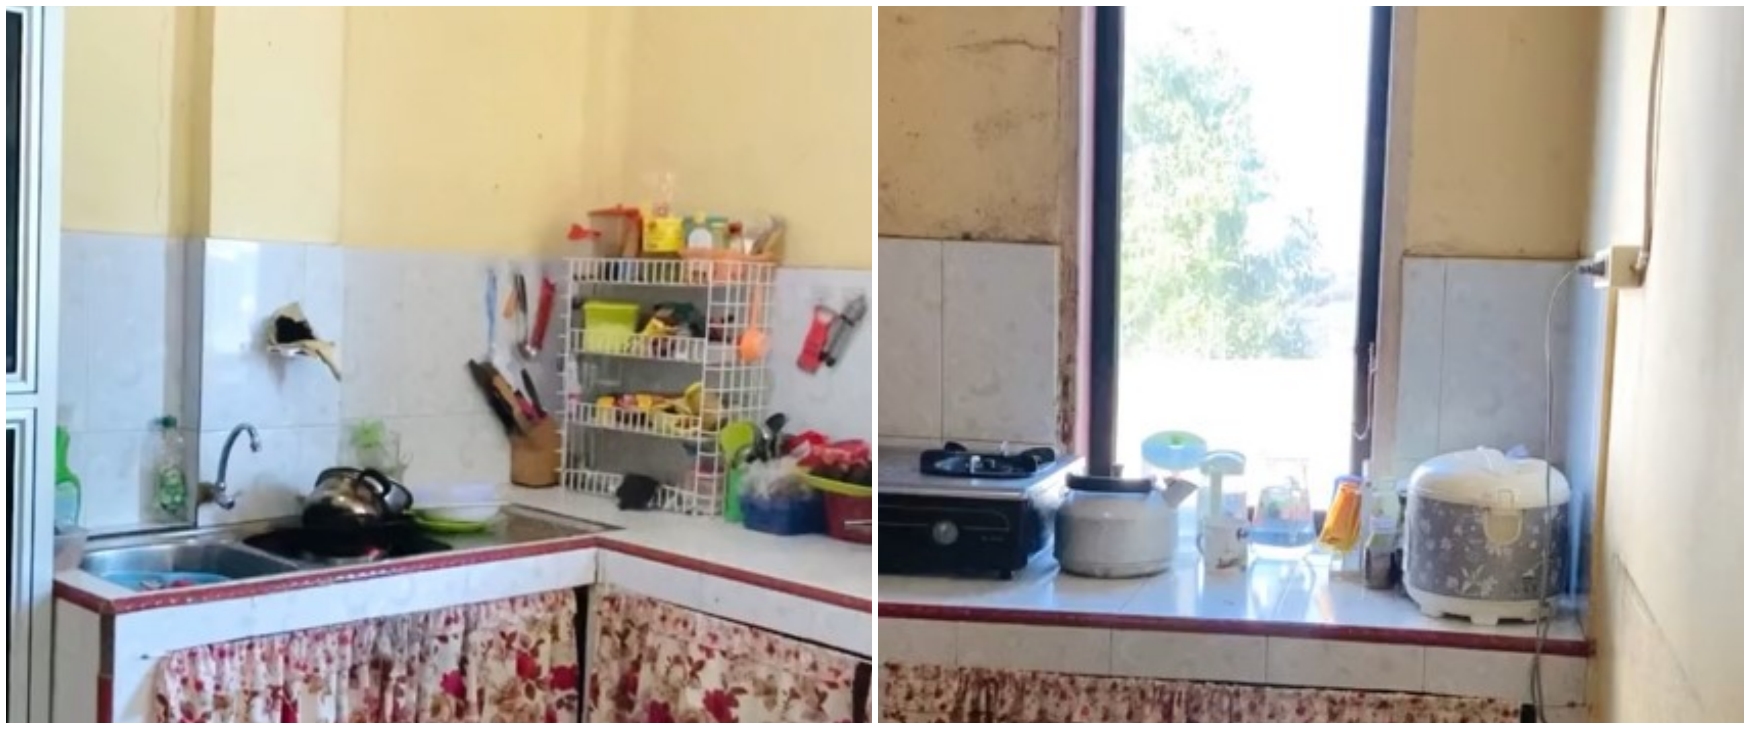 Makeover dapur lama jadi estetik dengan budget di bawah Rp 1 juta, perubahannya 180 derajat